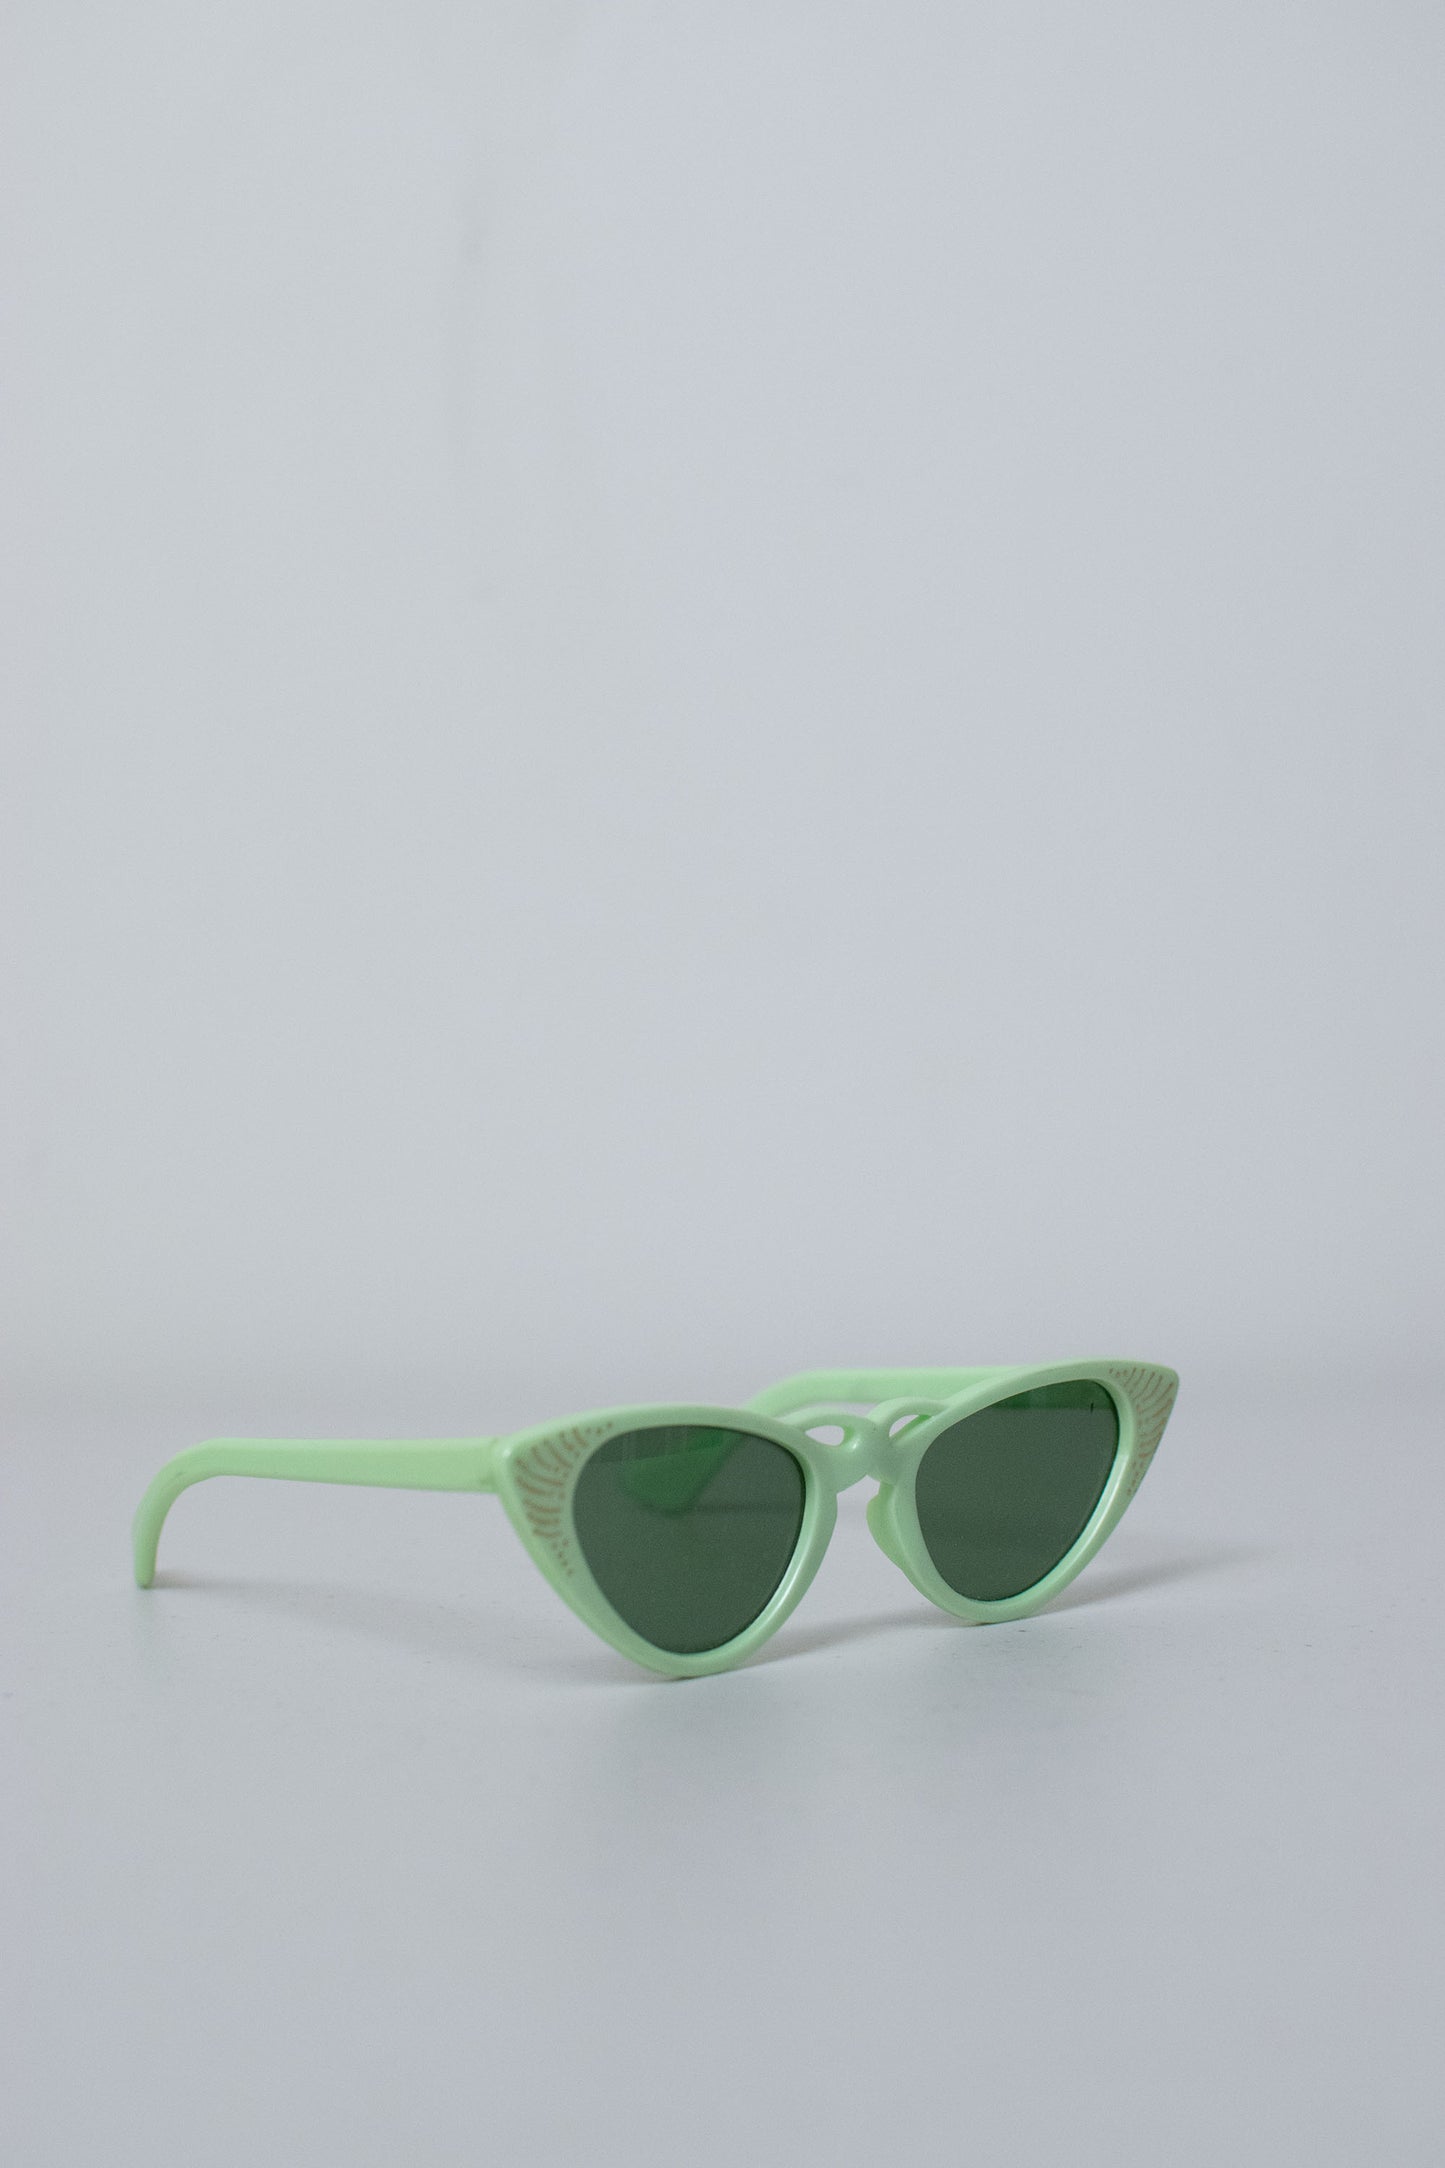 1950s Sunglasses | Mint Green